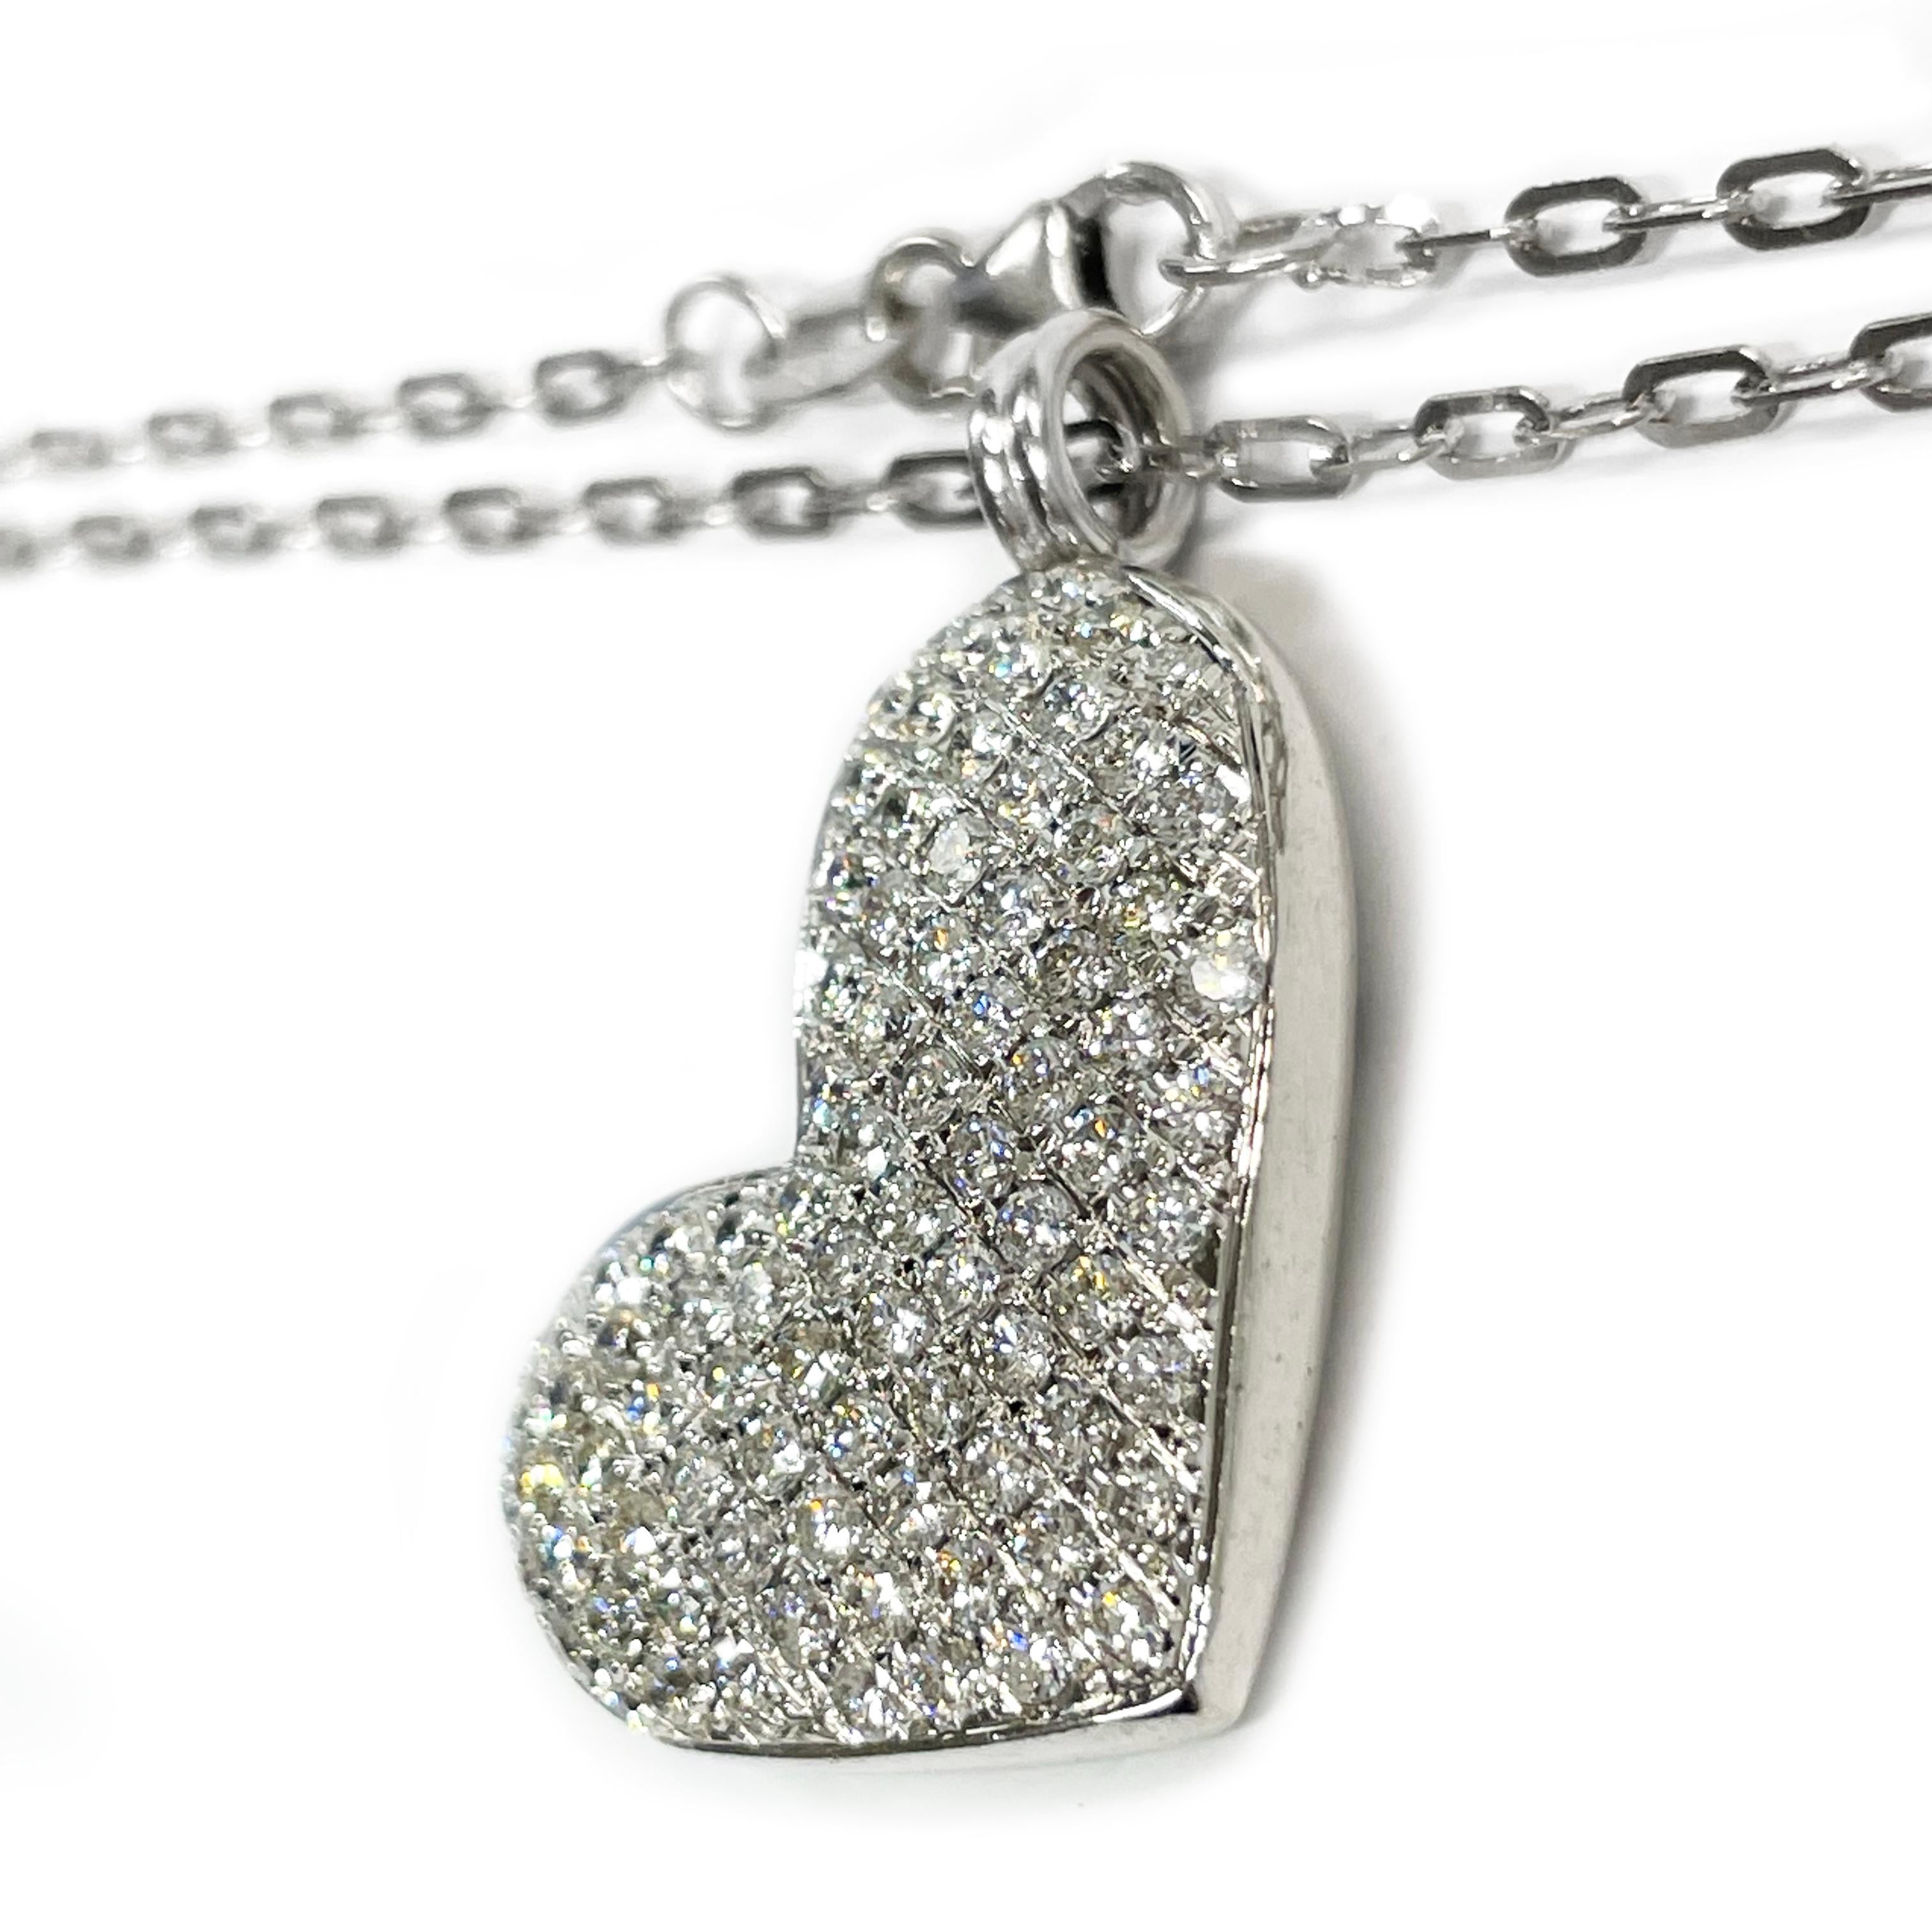 Collier en or blanc 14 carats avec pendentif en forme de cœur pavé de diamants. Le pendentif est en forme de cœur avec quatre-vingt-sept diamants ronds de 1,72 mm taillés en brillant et sertis en pavé, et une anse attachée. Les diamants ont un poids